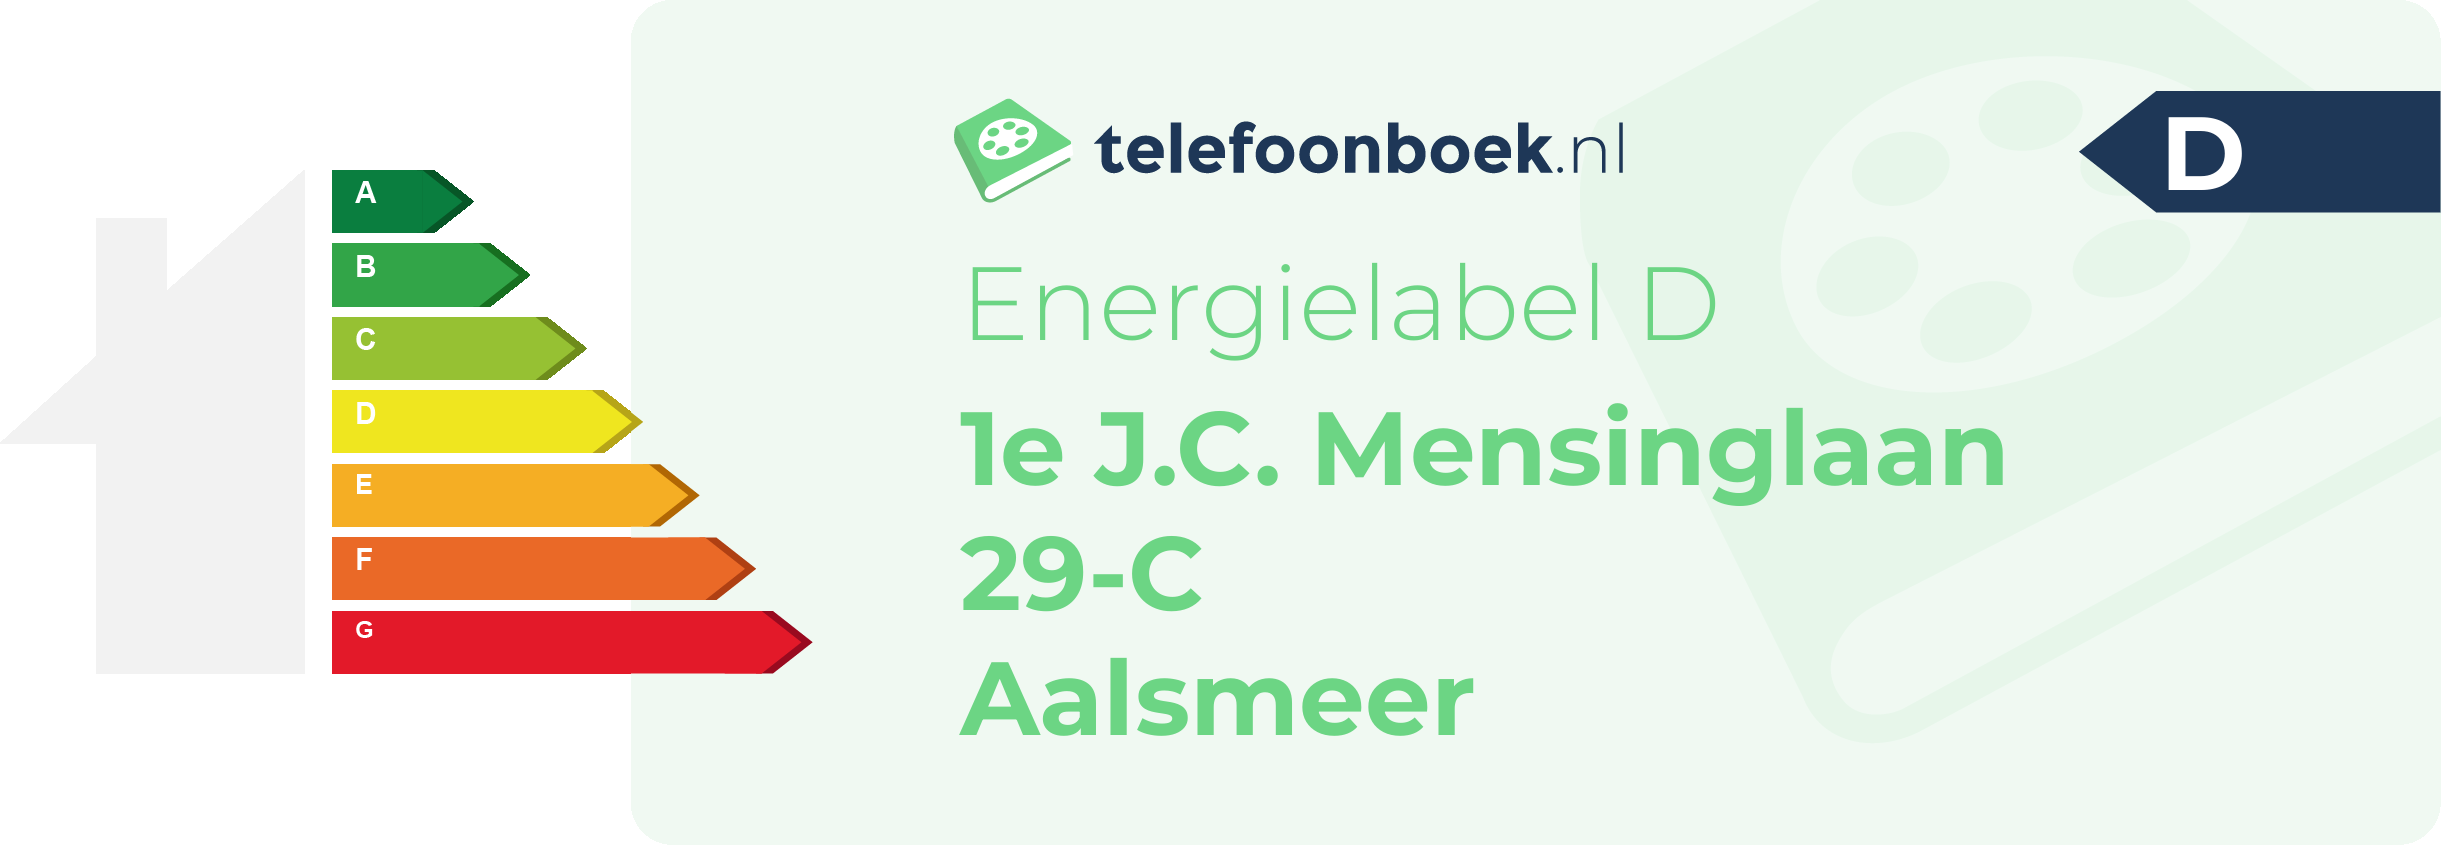 Energielabel 1e J.C. Mensinglaan 29-C Aalsmeer